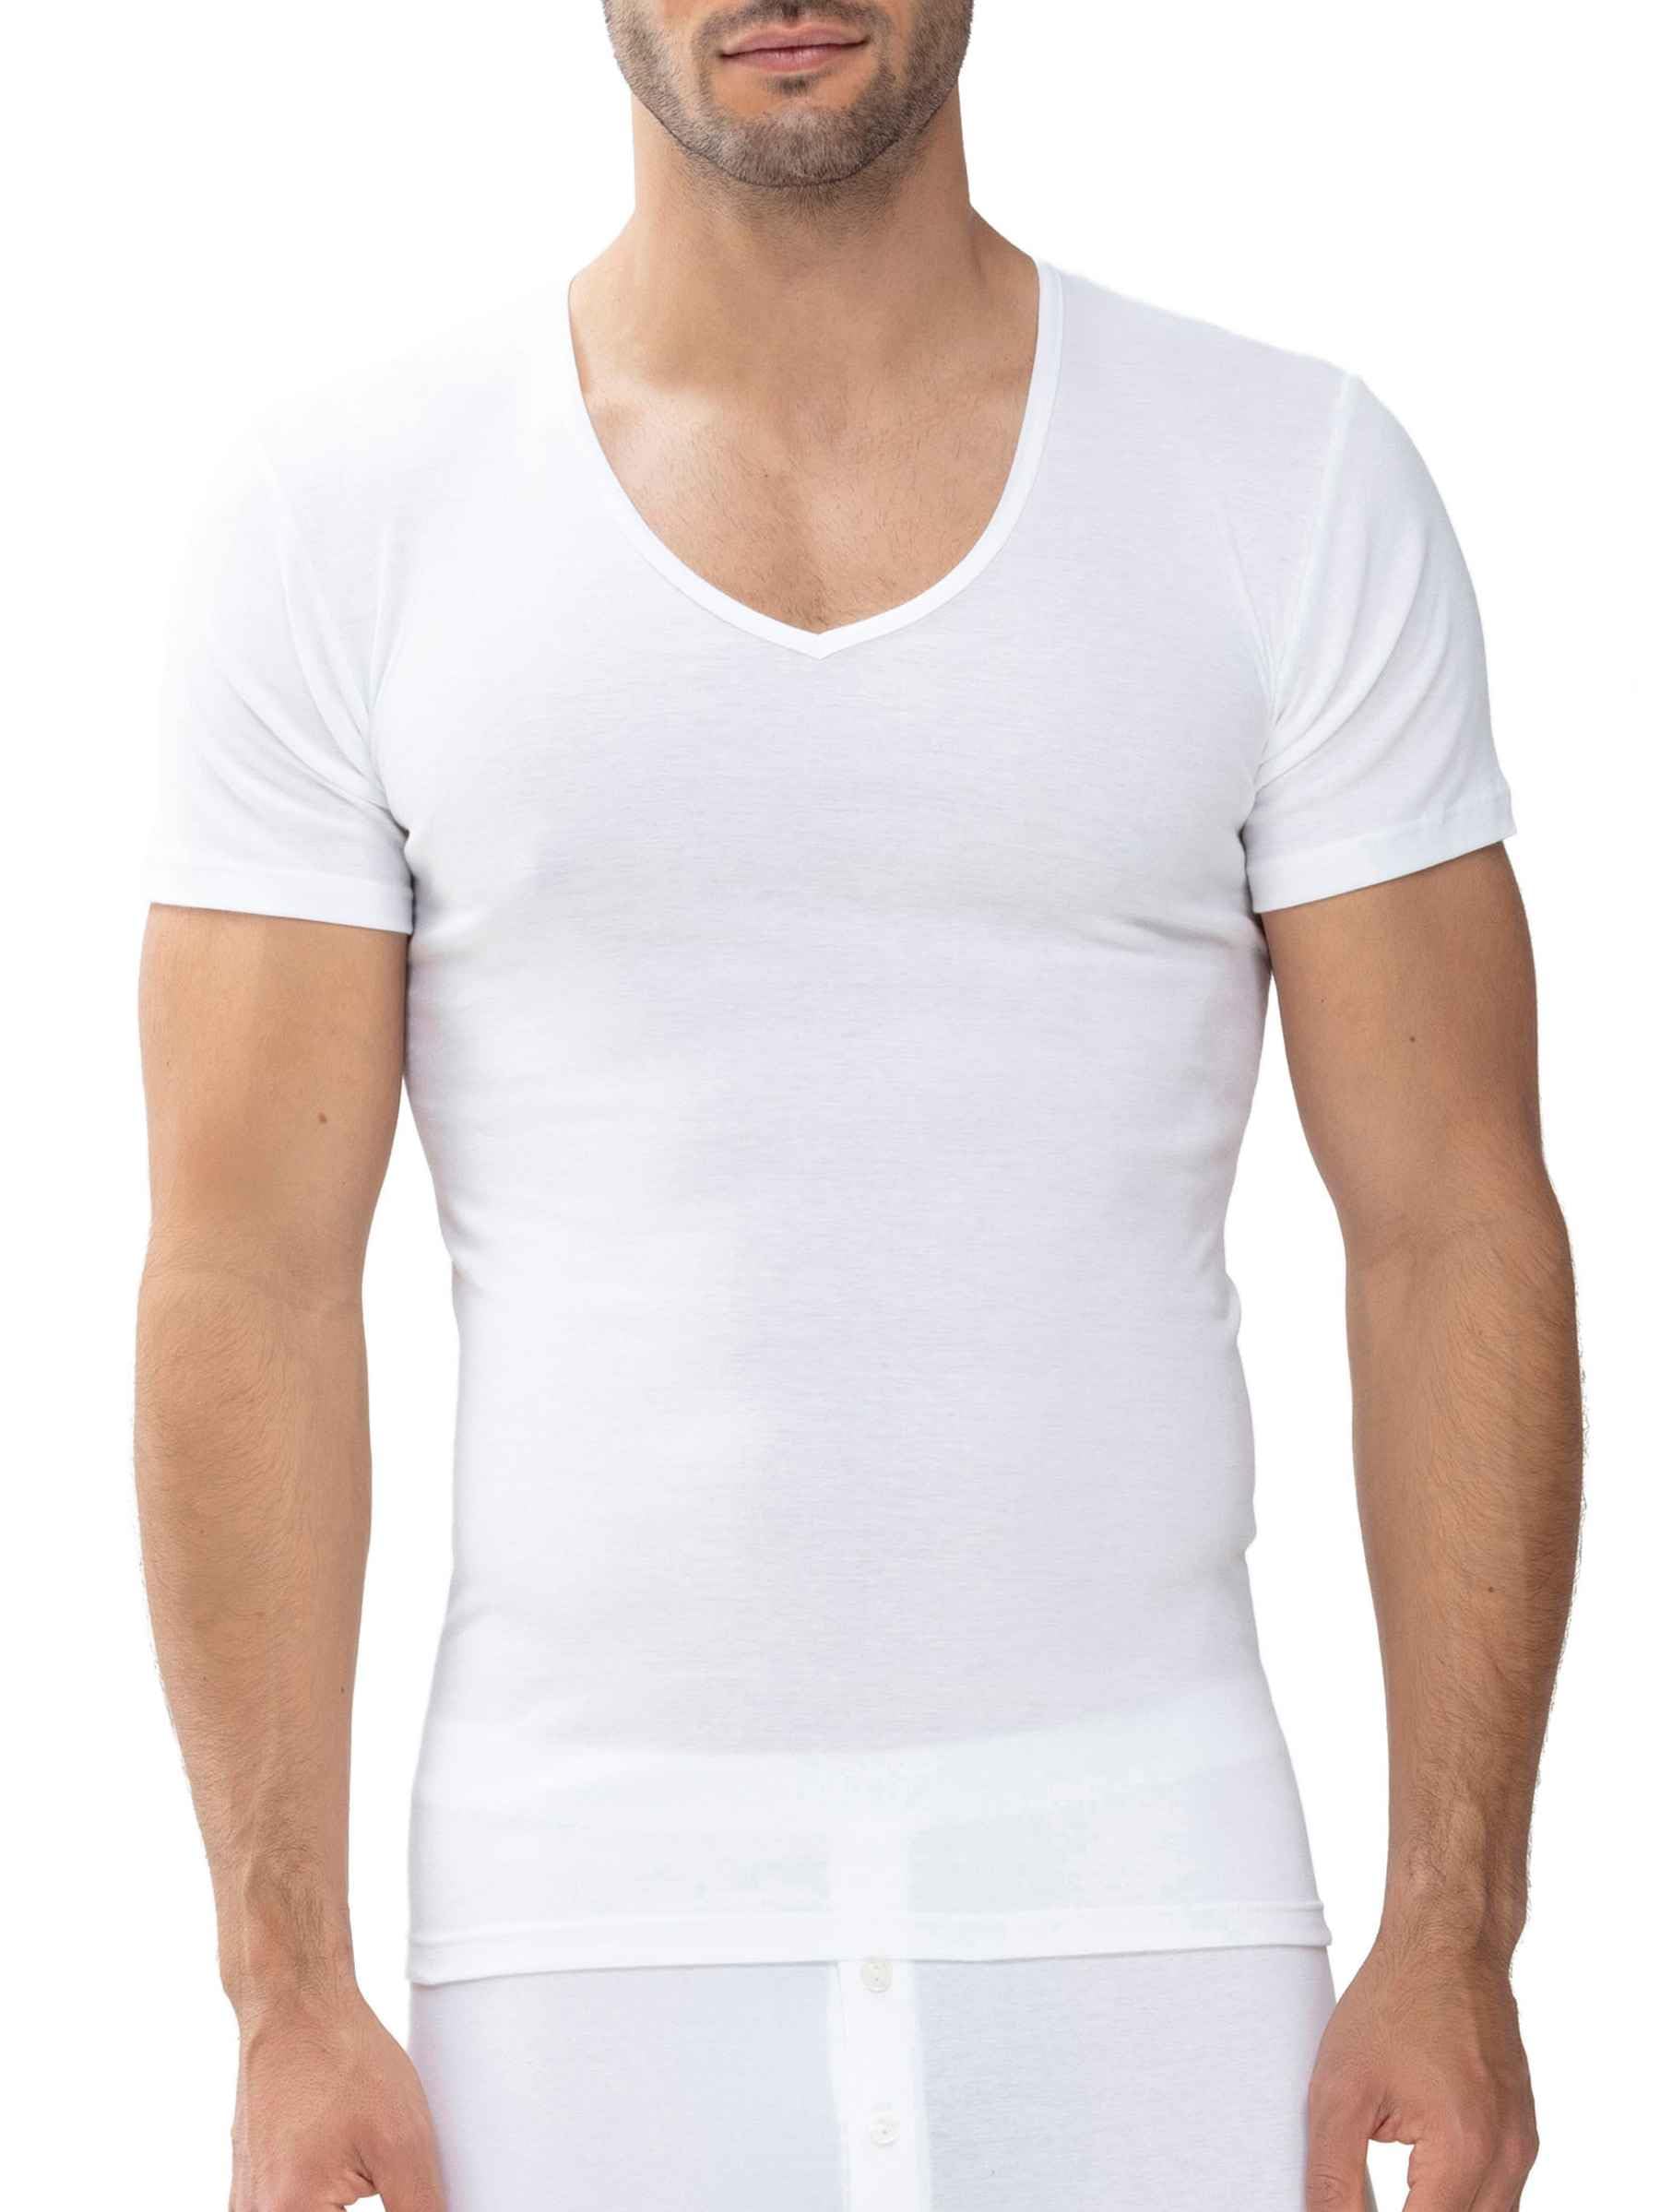 Mey Tagwäsche Serie Casual Cotton Herren Shirts 1/2 Arm Weiss L(6)